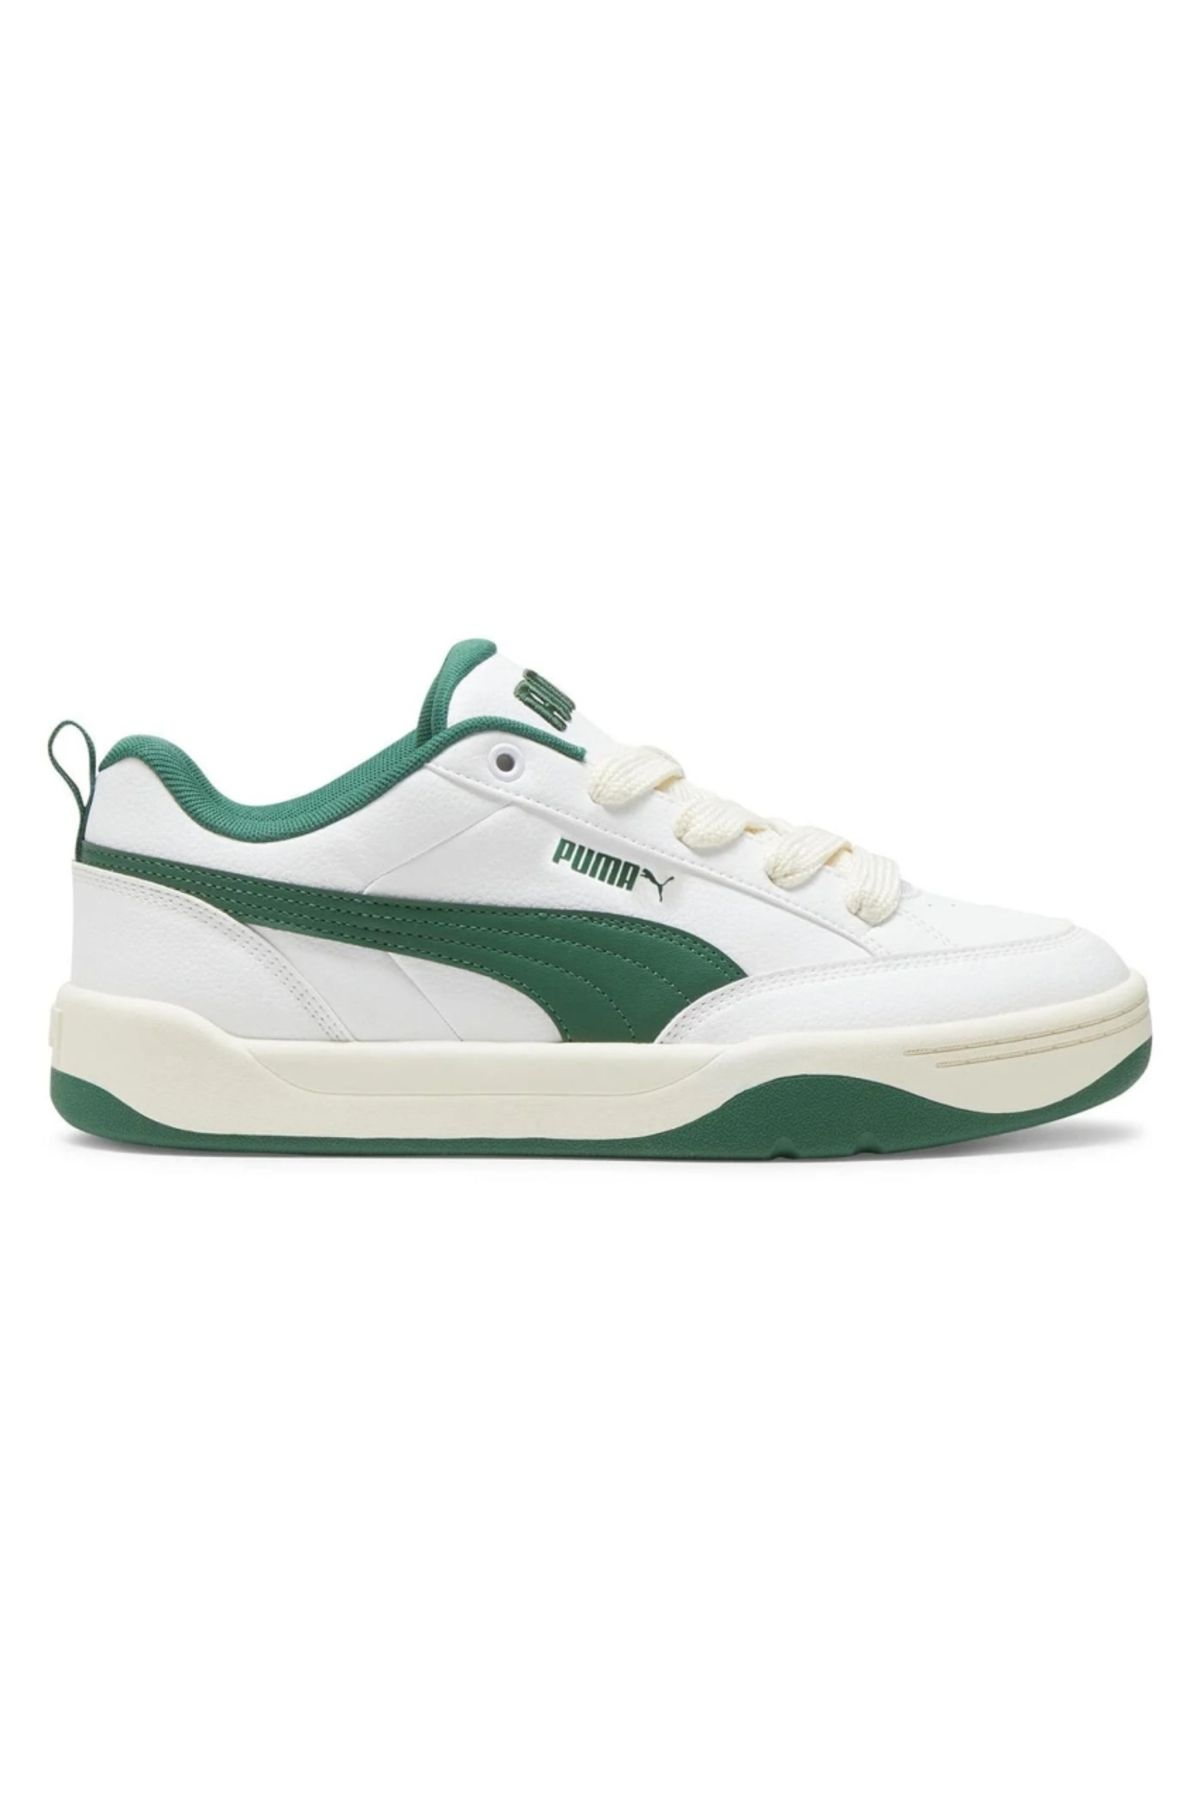 Puma Park Lifestyle Unisex Beyaz Sneaker Ayakkabı 39508402